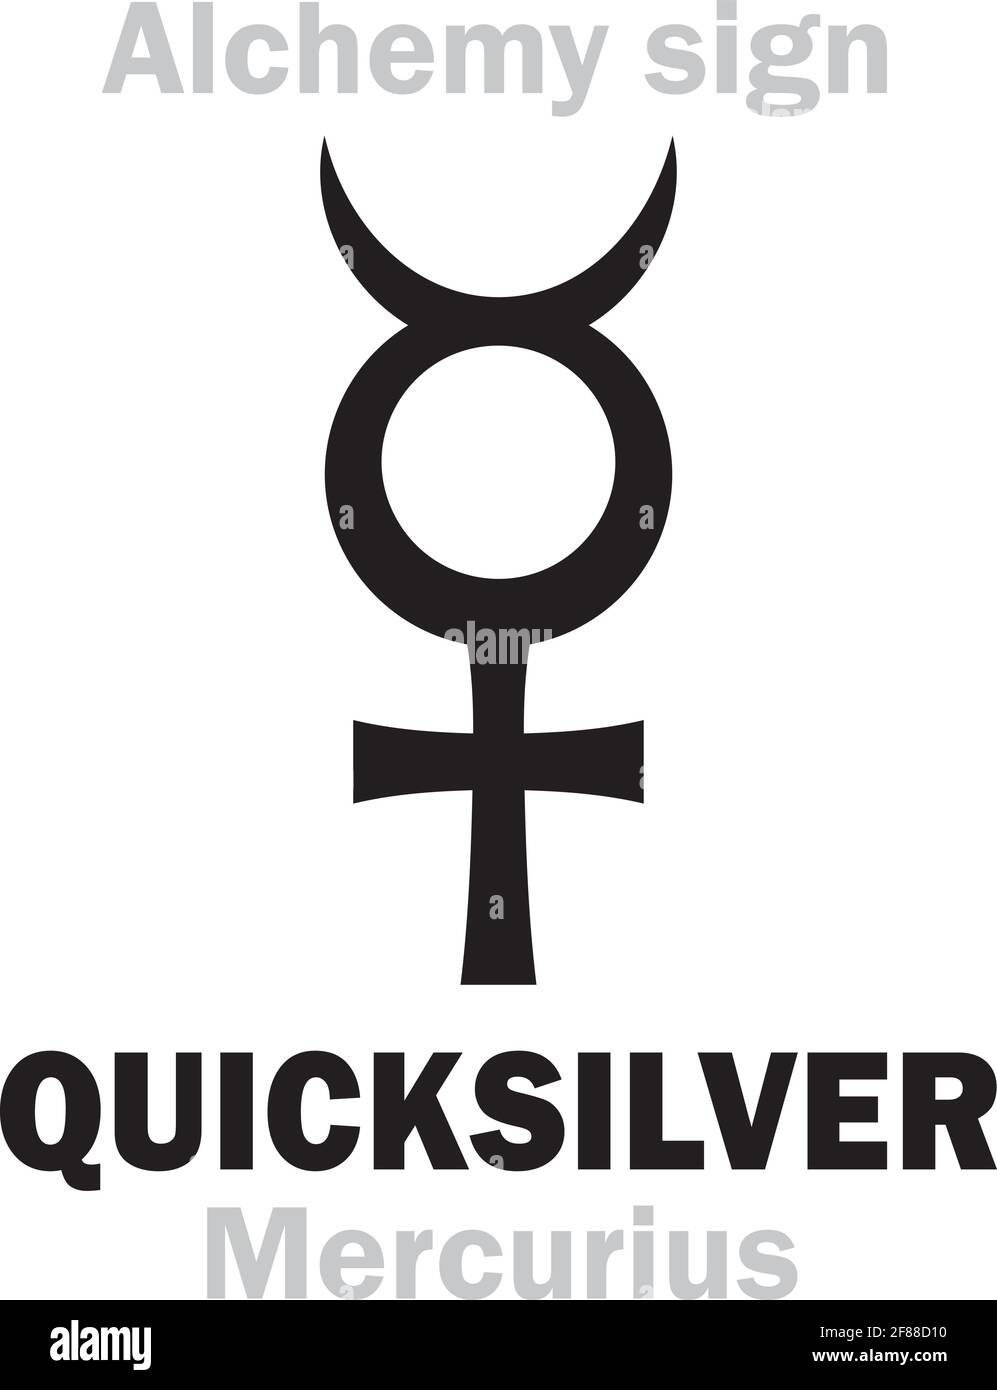 Quicksilver, Little Alchemy Wiki